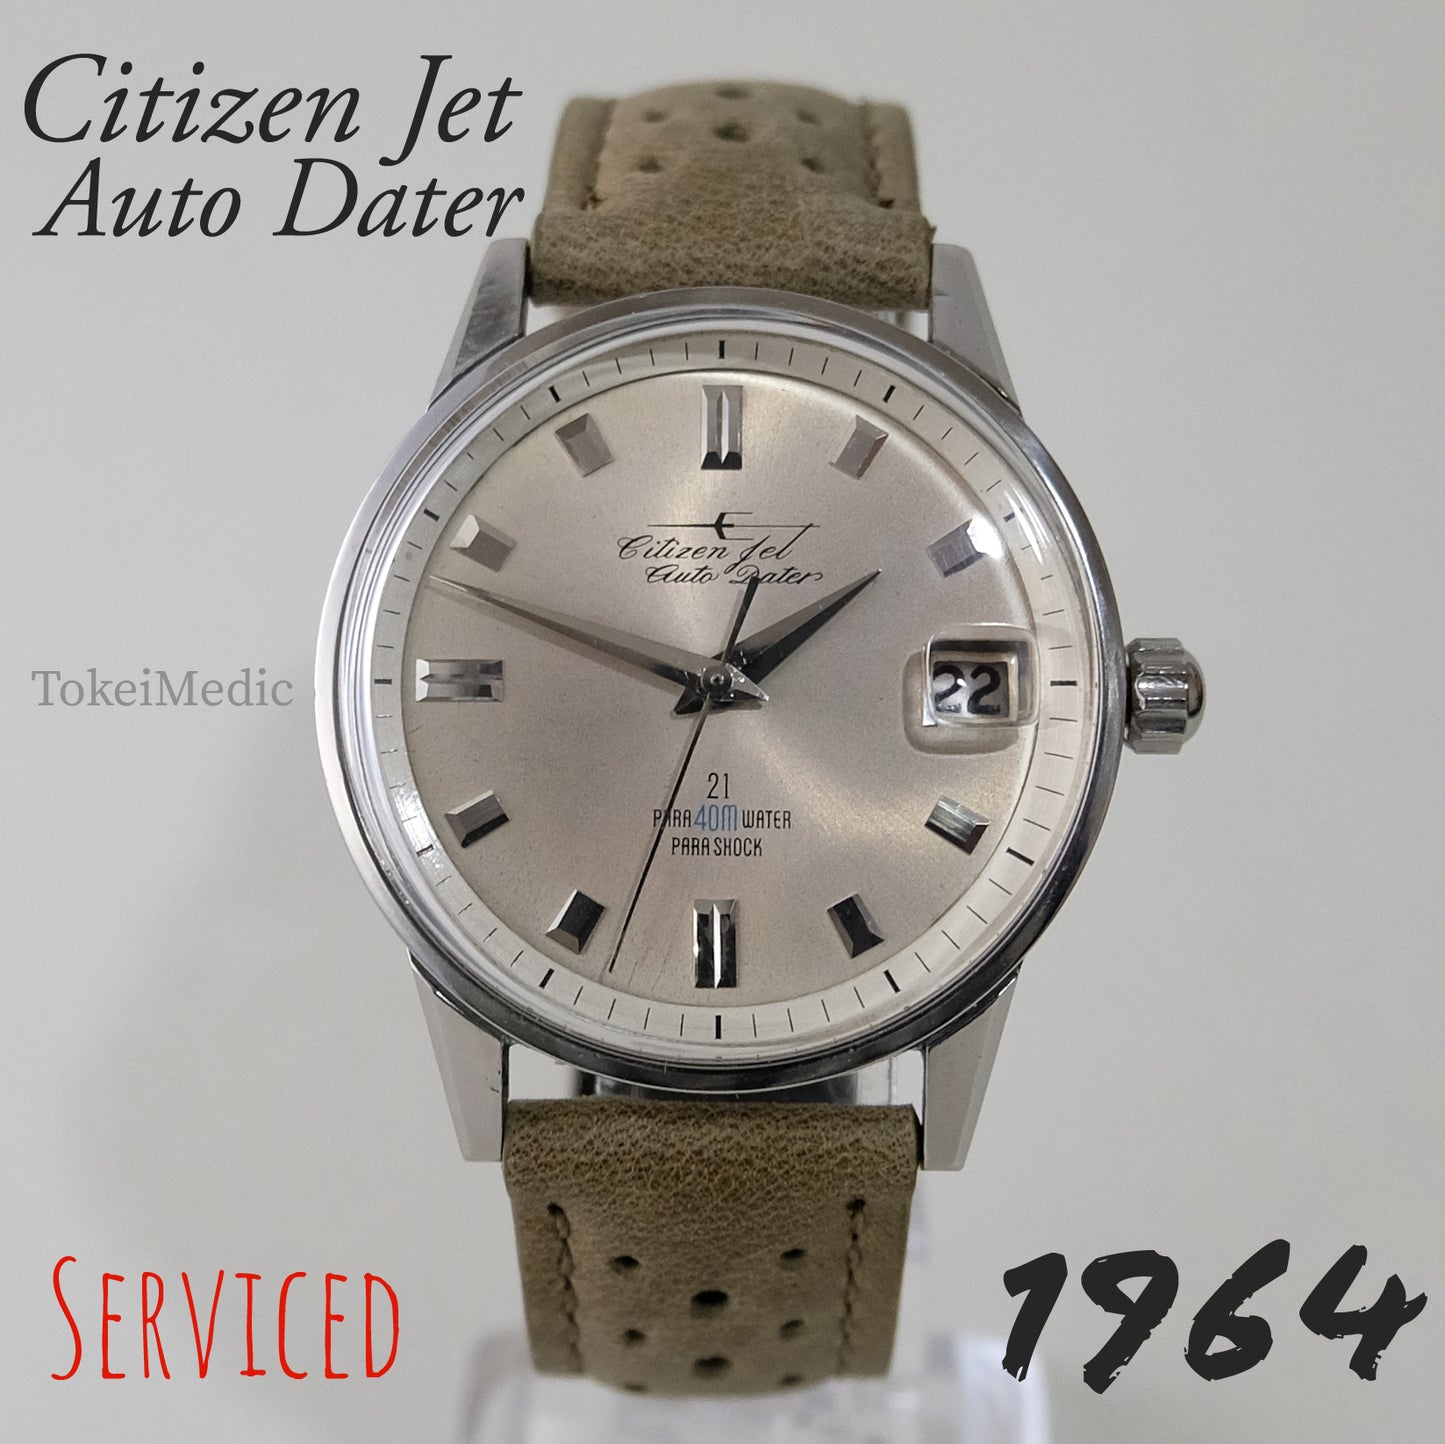 1964 Citizen Jet Auto Dater AD1407054